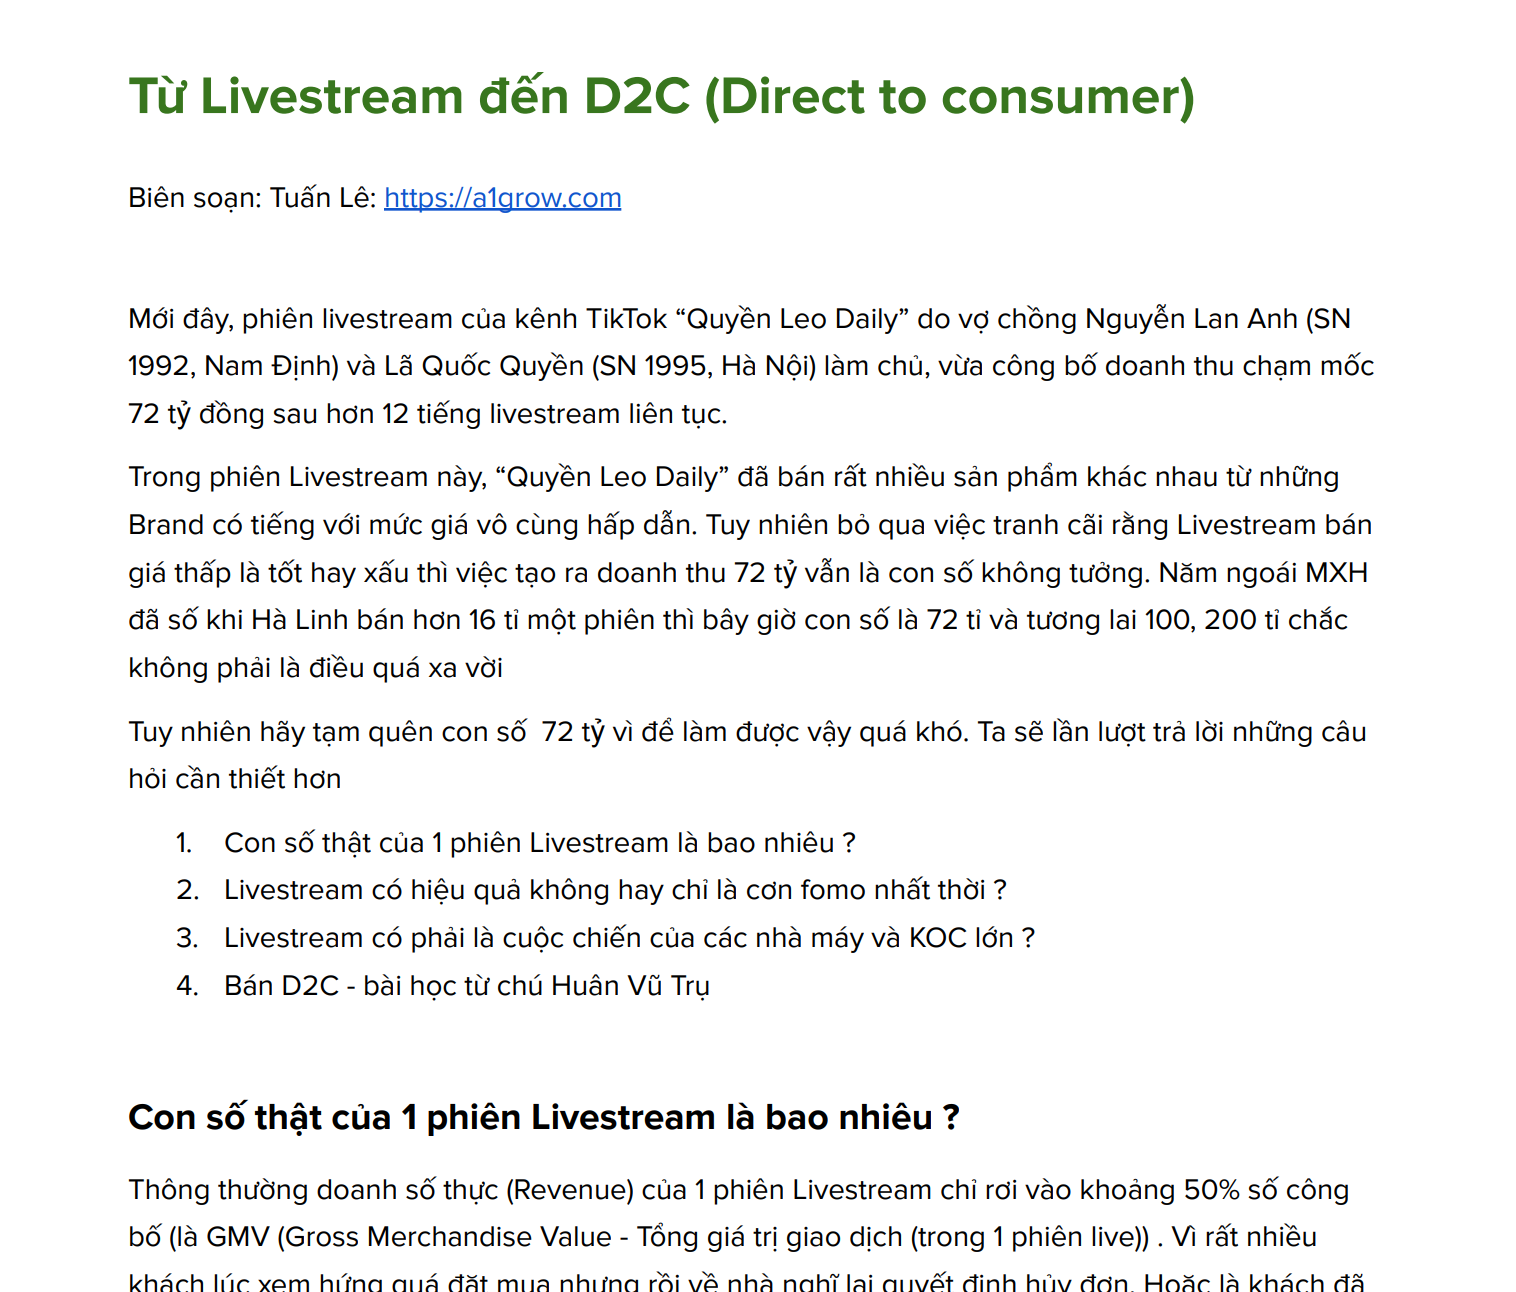  Livestream 75 tỉ và mô hình D2C vạn đơn 